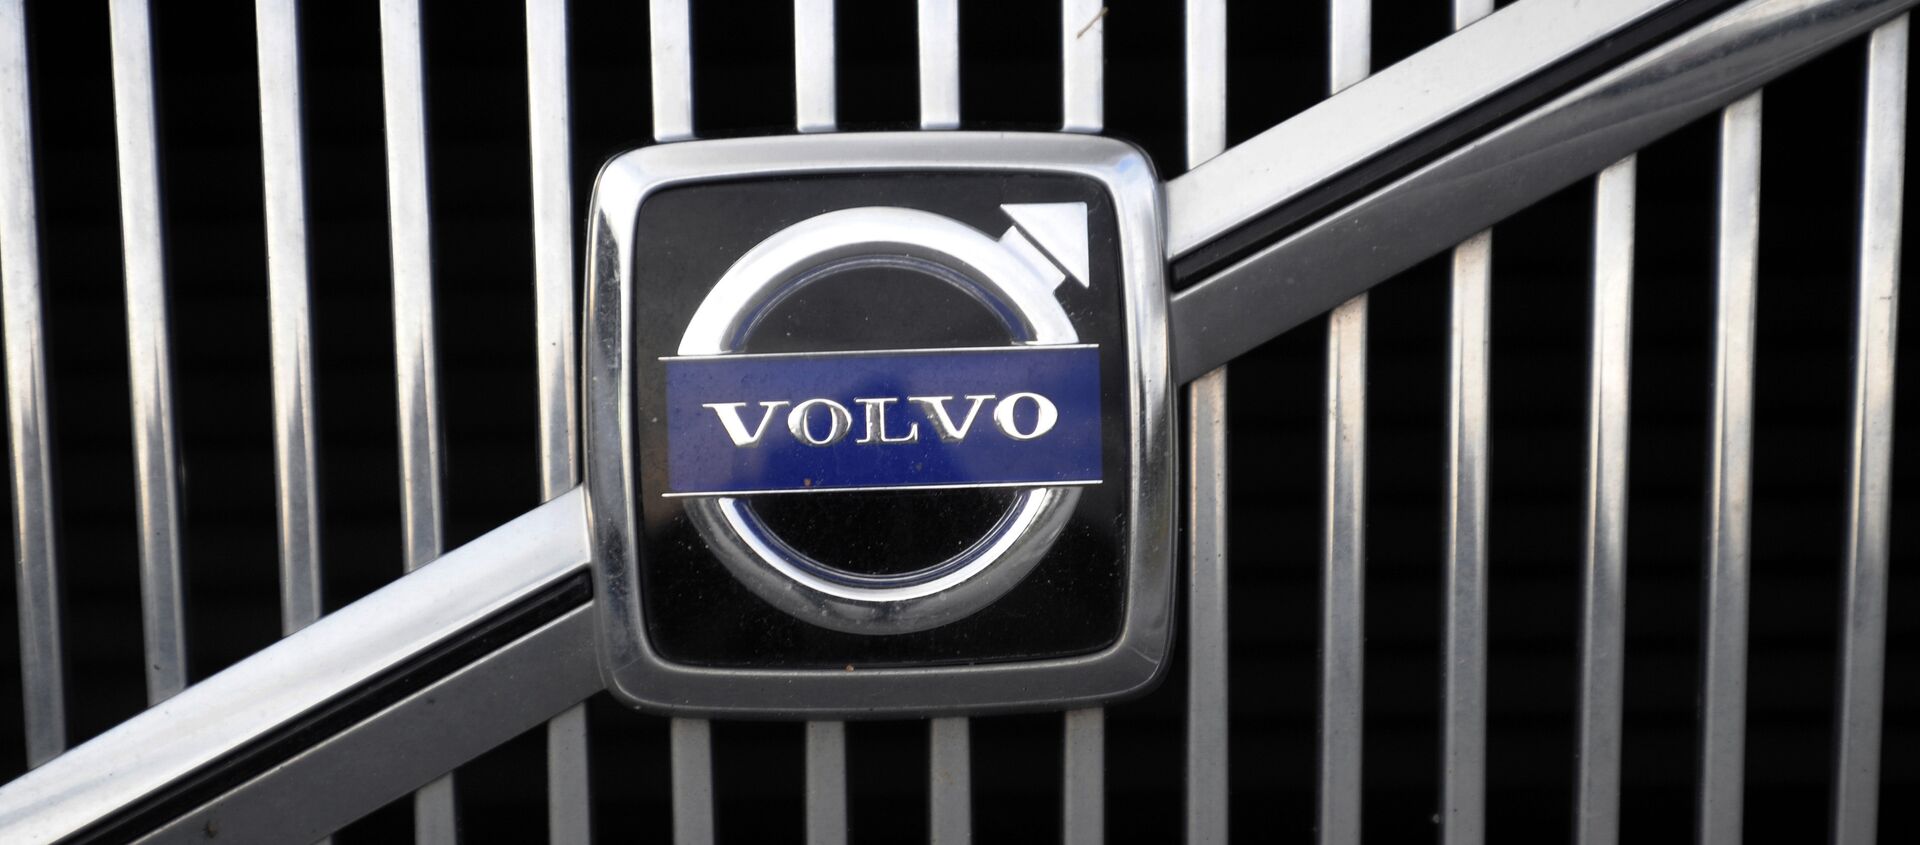 The logo of the Swedish car manufacturer Volvo is pictured on a car in Gothenburg, southwestern Sweden - Sputnik International, 1920, 24.02.2021